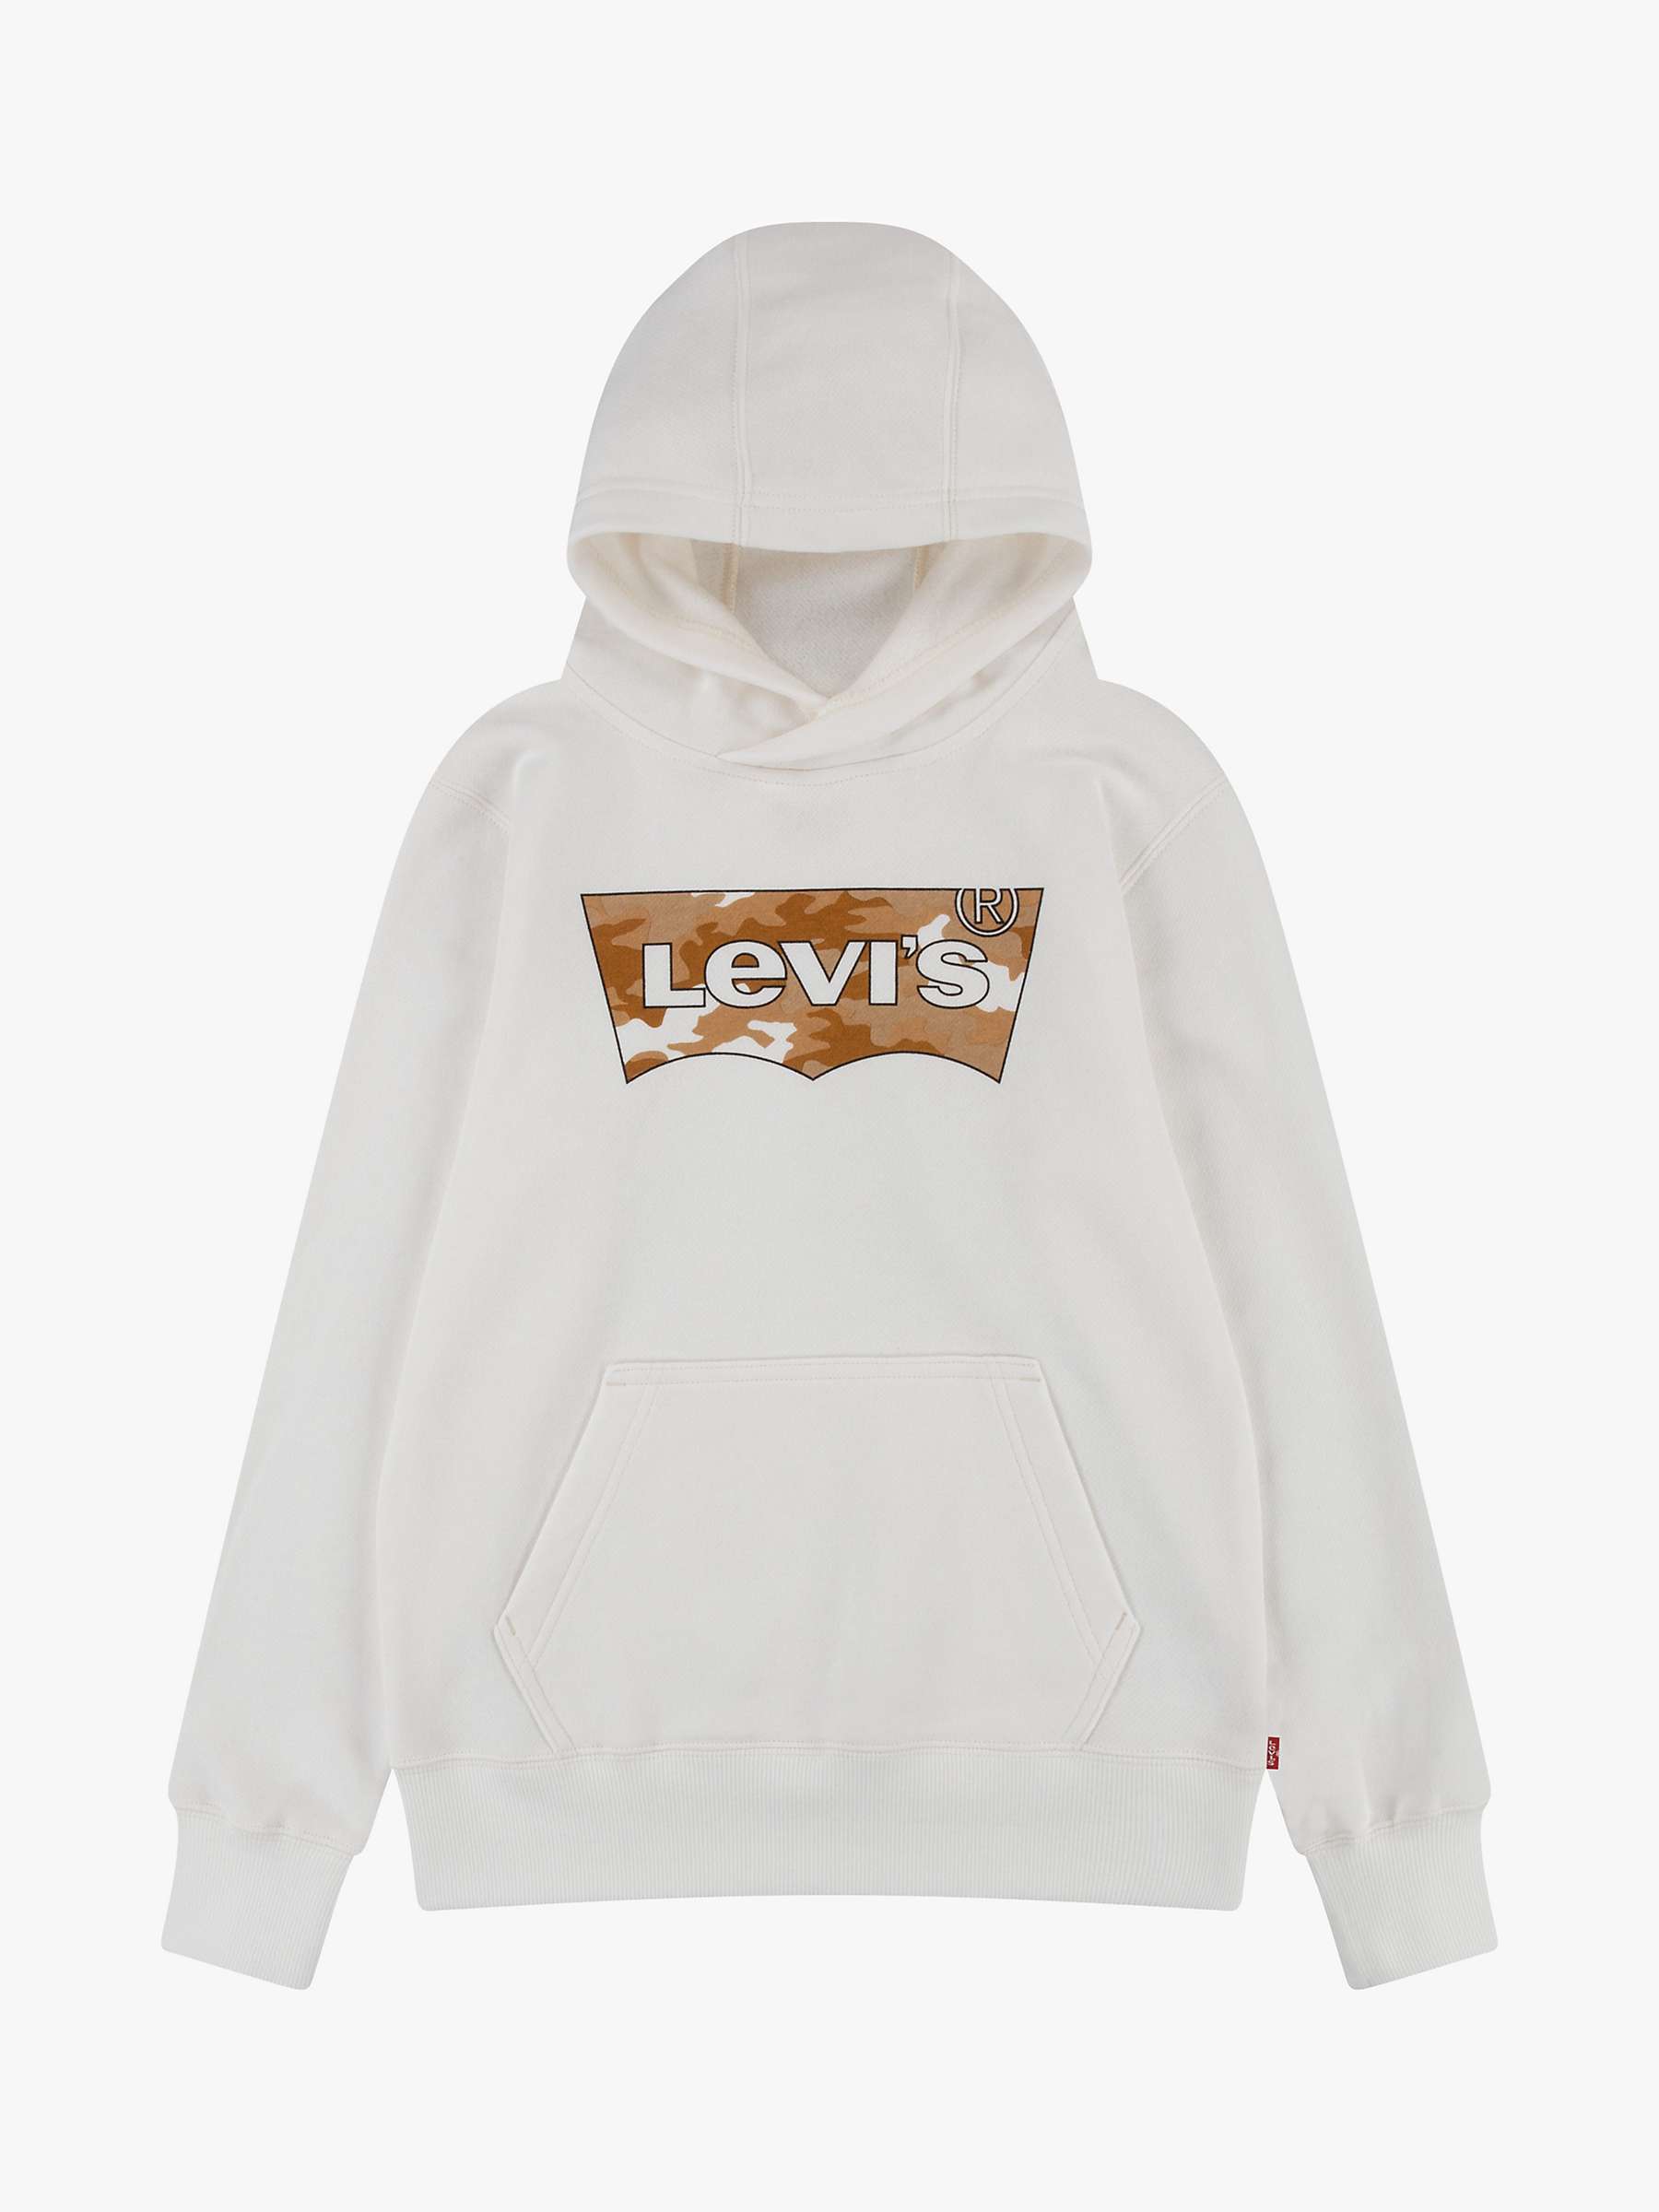 Buy Levi's Kids' Cotton Batwing Logo Hoodie, Tofu Online at johnlewis.com